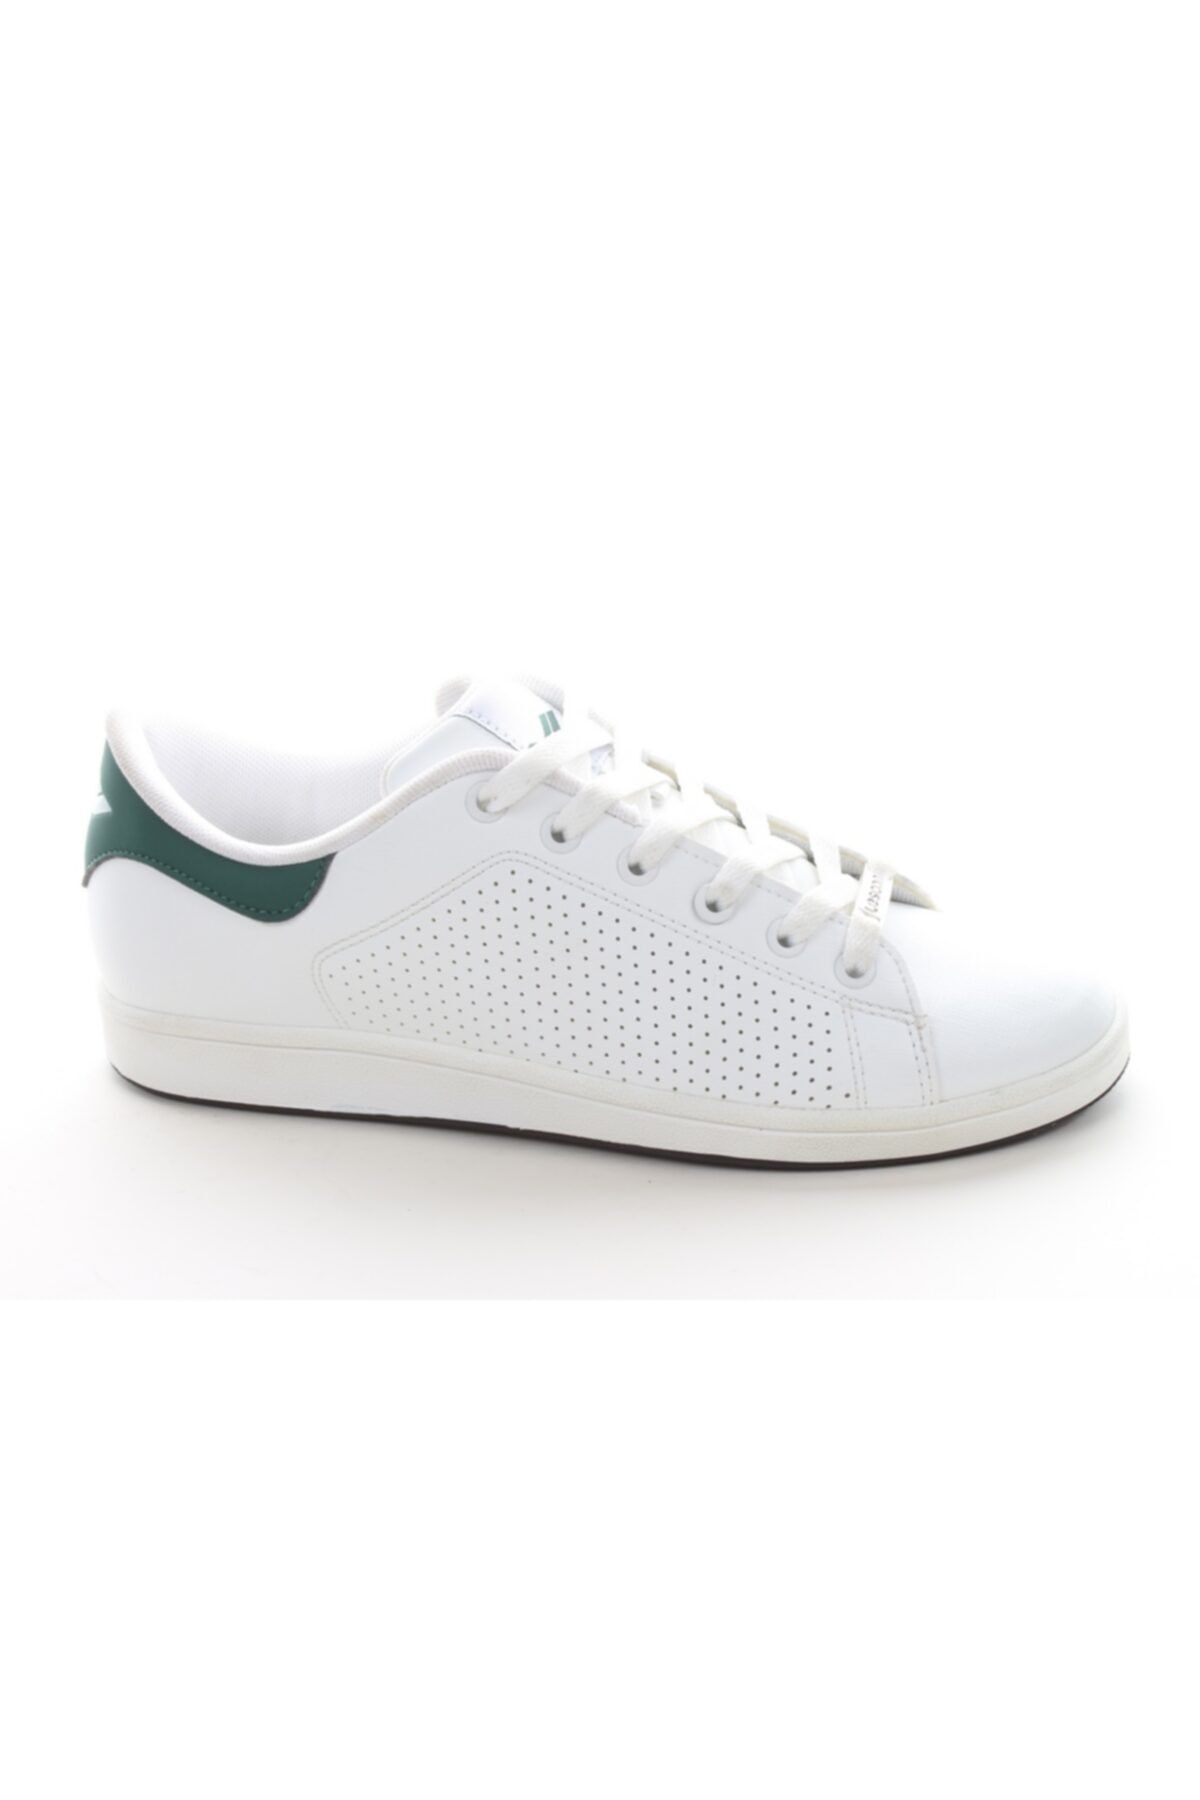 Lescon Erkek Beyaz Günlük Spor Ayakkabı L-6532